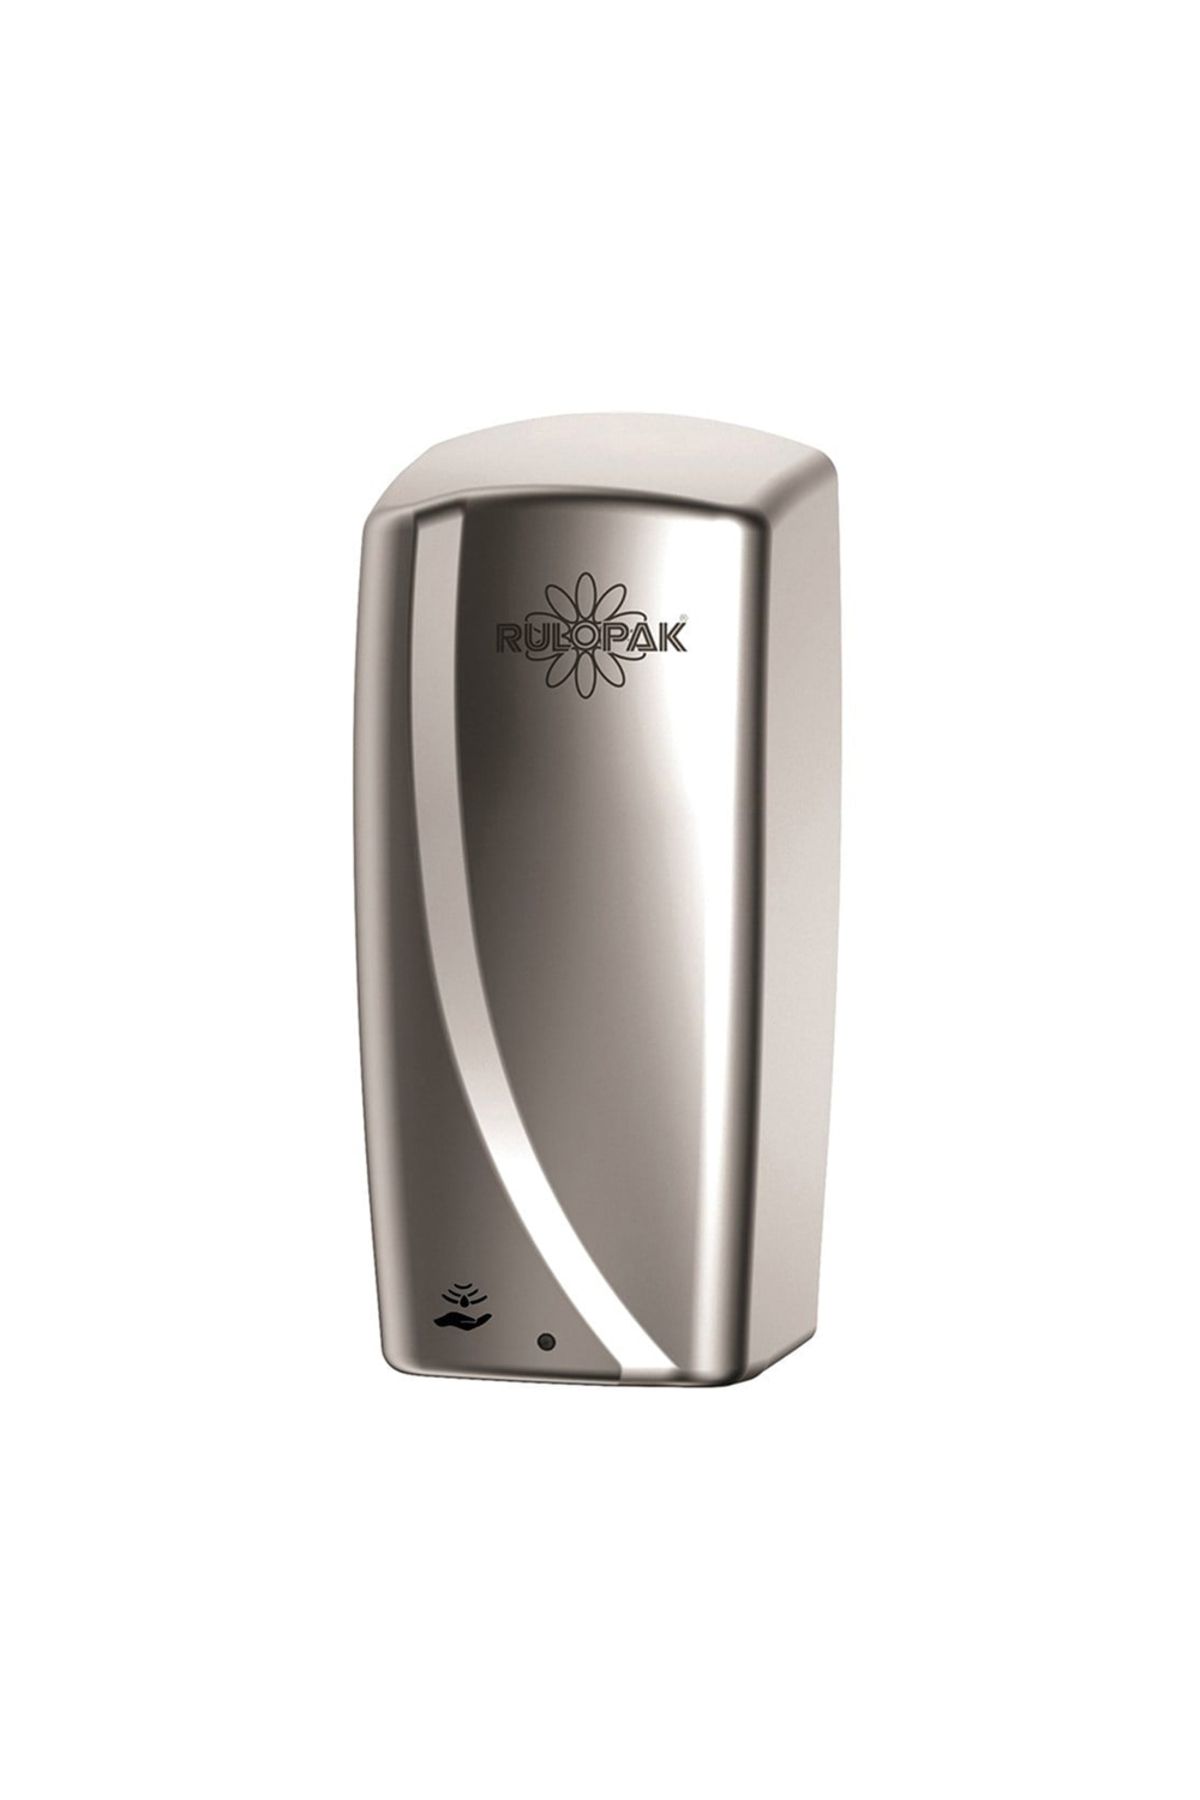 Rulopak Sensörlü Doldurmalı Sıvı Sabun & Jel Dispenseri 1000 Ml Krom